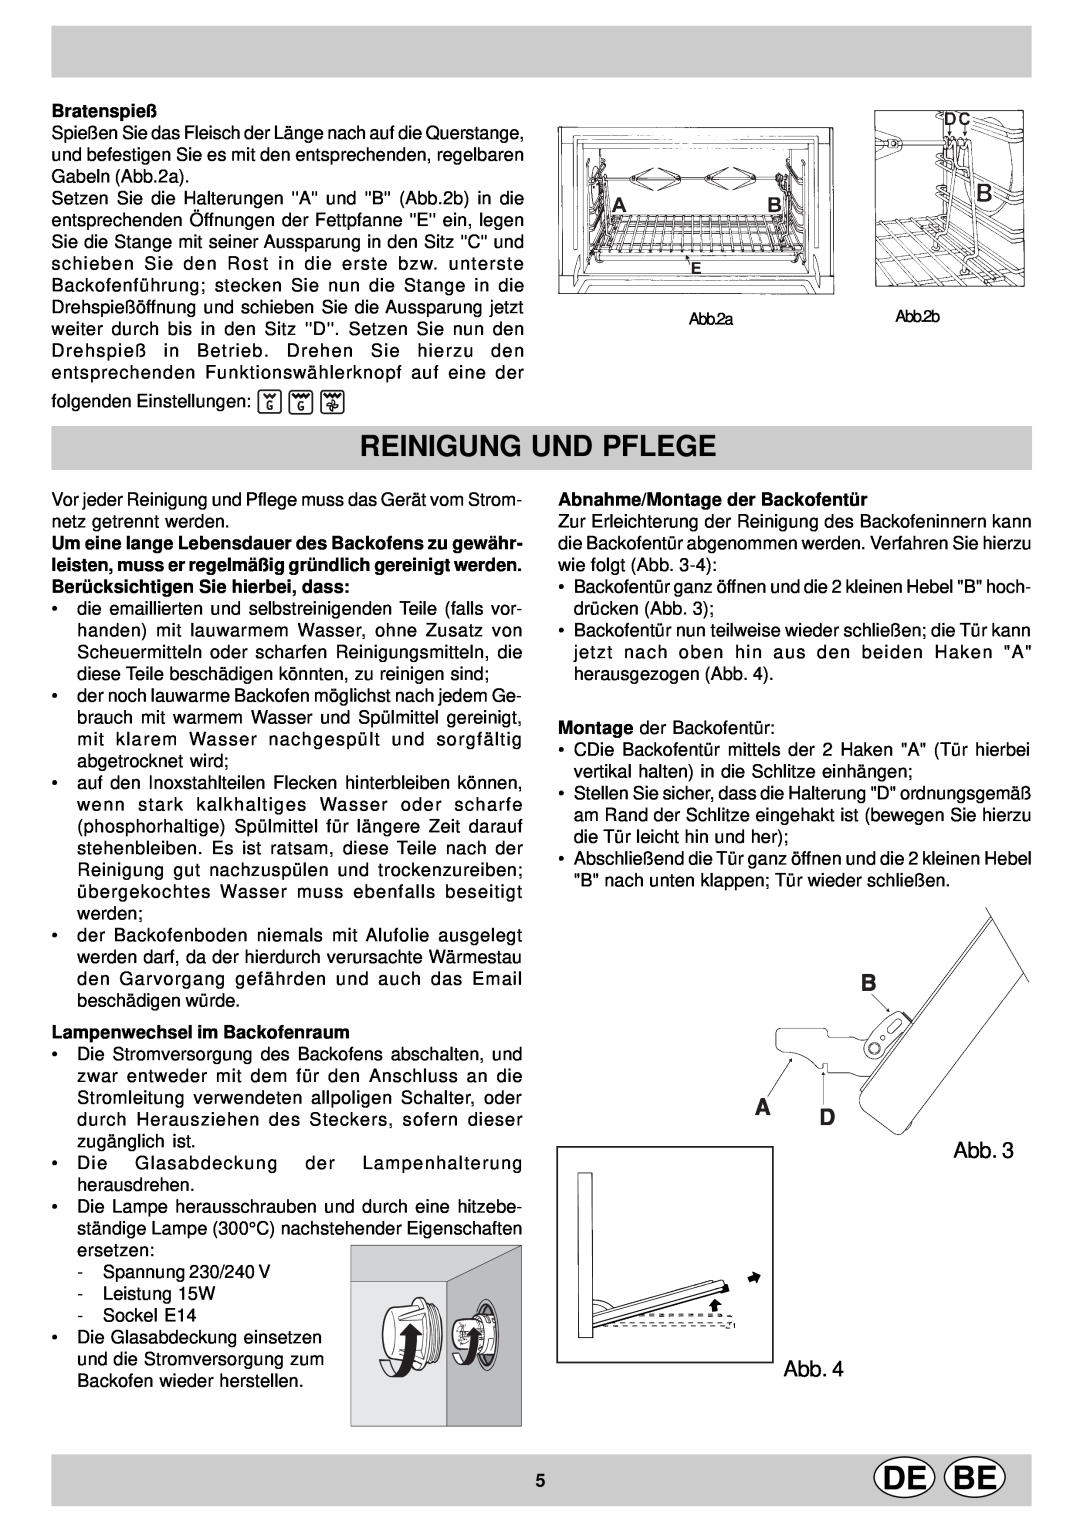 Indesit KP9507EB manual Reinigung Und Pflege, Abb Abb, Bratenspieß, Lampenwechsel im Backofenraum 